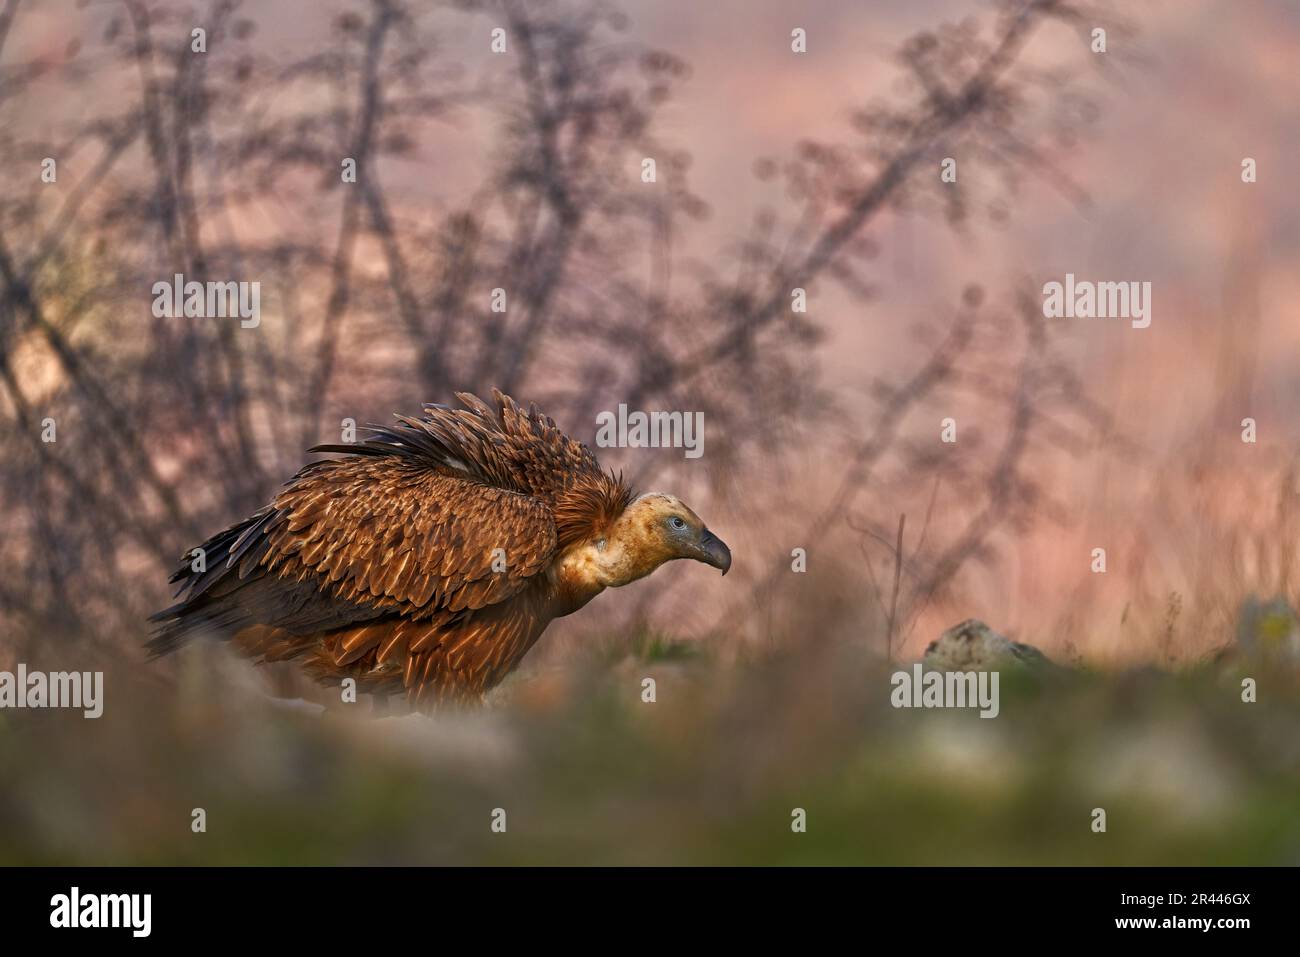 Avvoltoi dalla Spagna, Europa. Griffon avvoltoi in erba, fauna selvatica, montagna rocciosa. Foto Stock